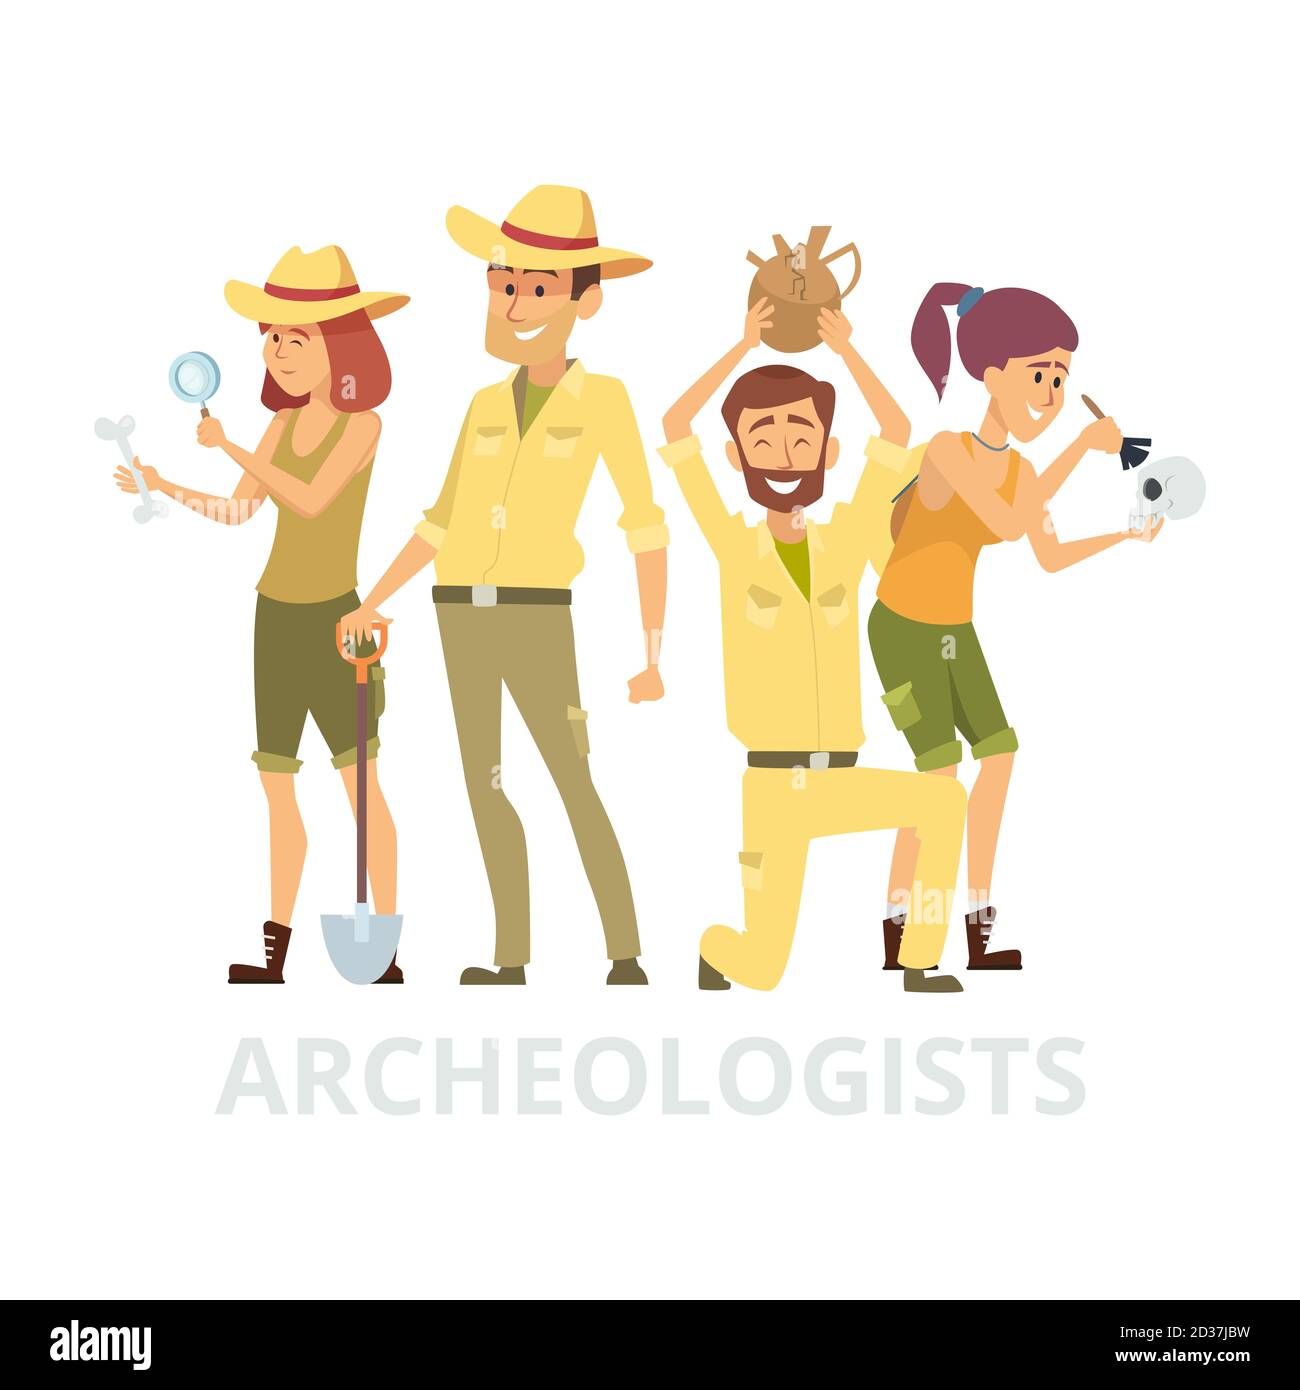 Groupe d'archéologues isolés sur fond blanc. Illustration des caractères archélogistes vectoriels Illustration de Vecteur